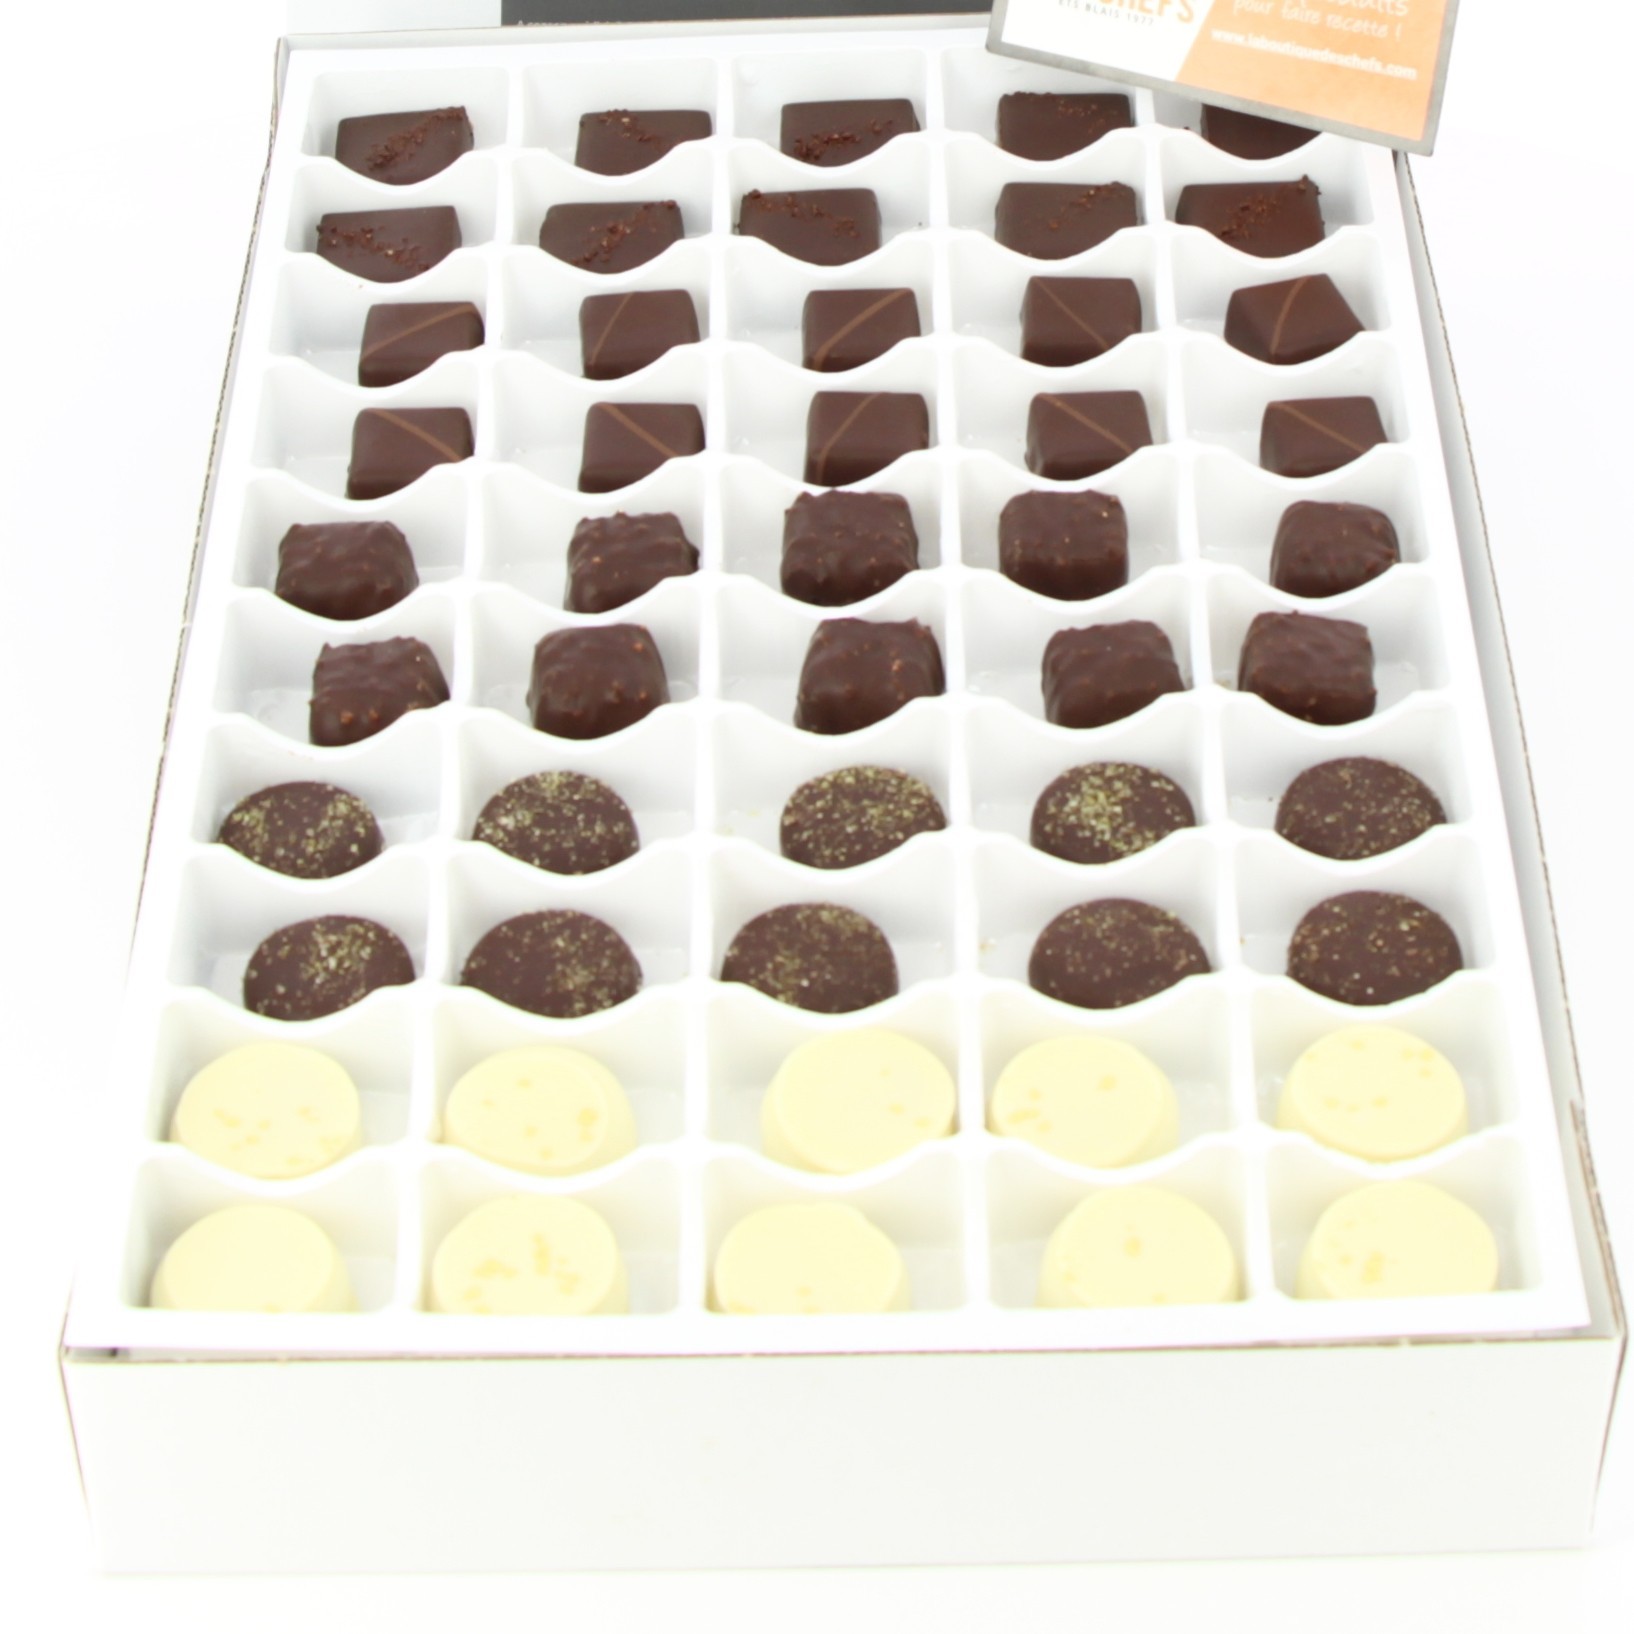 Chocolat Weiss : ventes en ligne de tablette, coffret, ballotin de chocolats